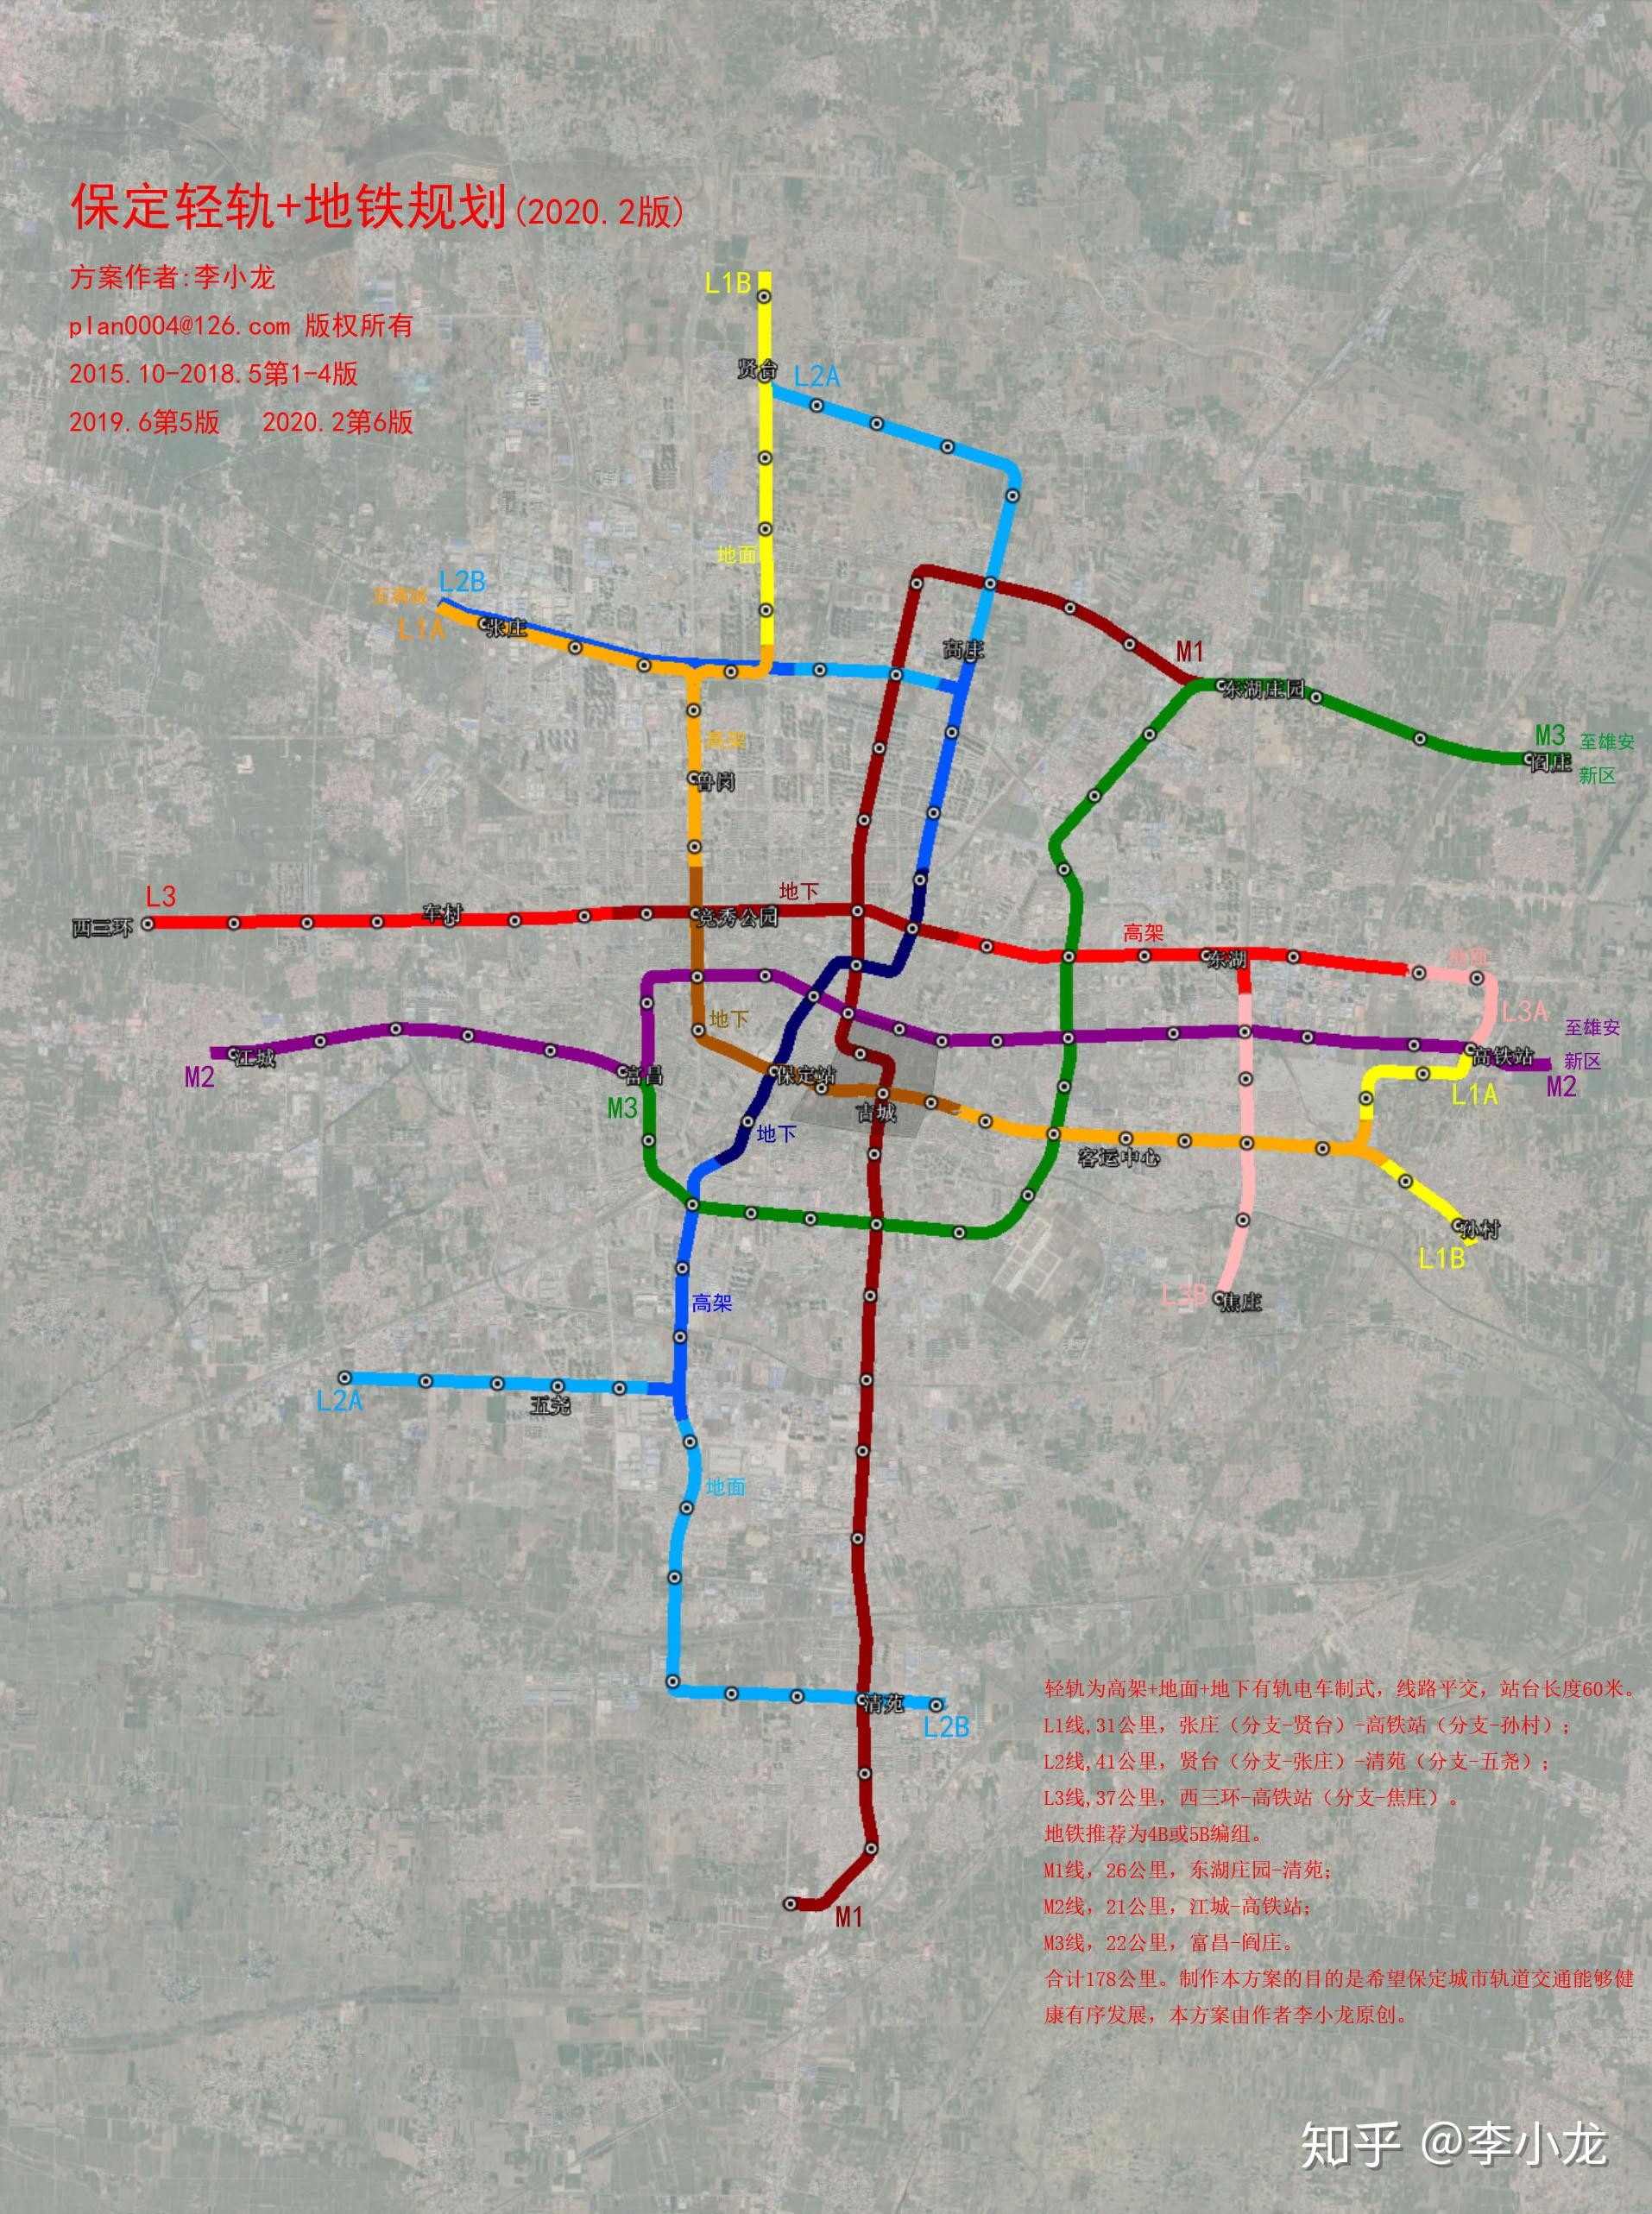 保定轻轨 地铁规划(2020版)(李小龙原创作品) 